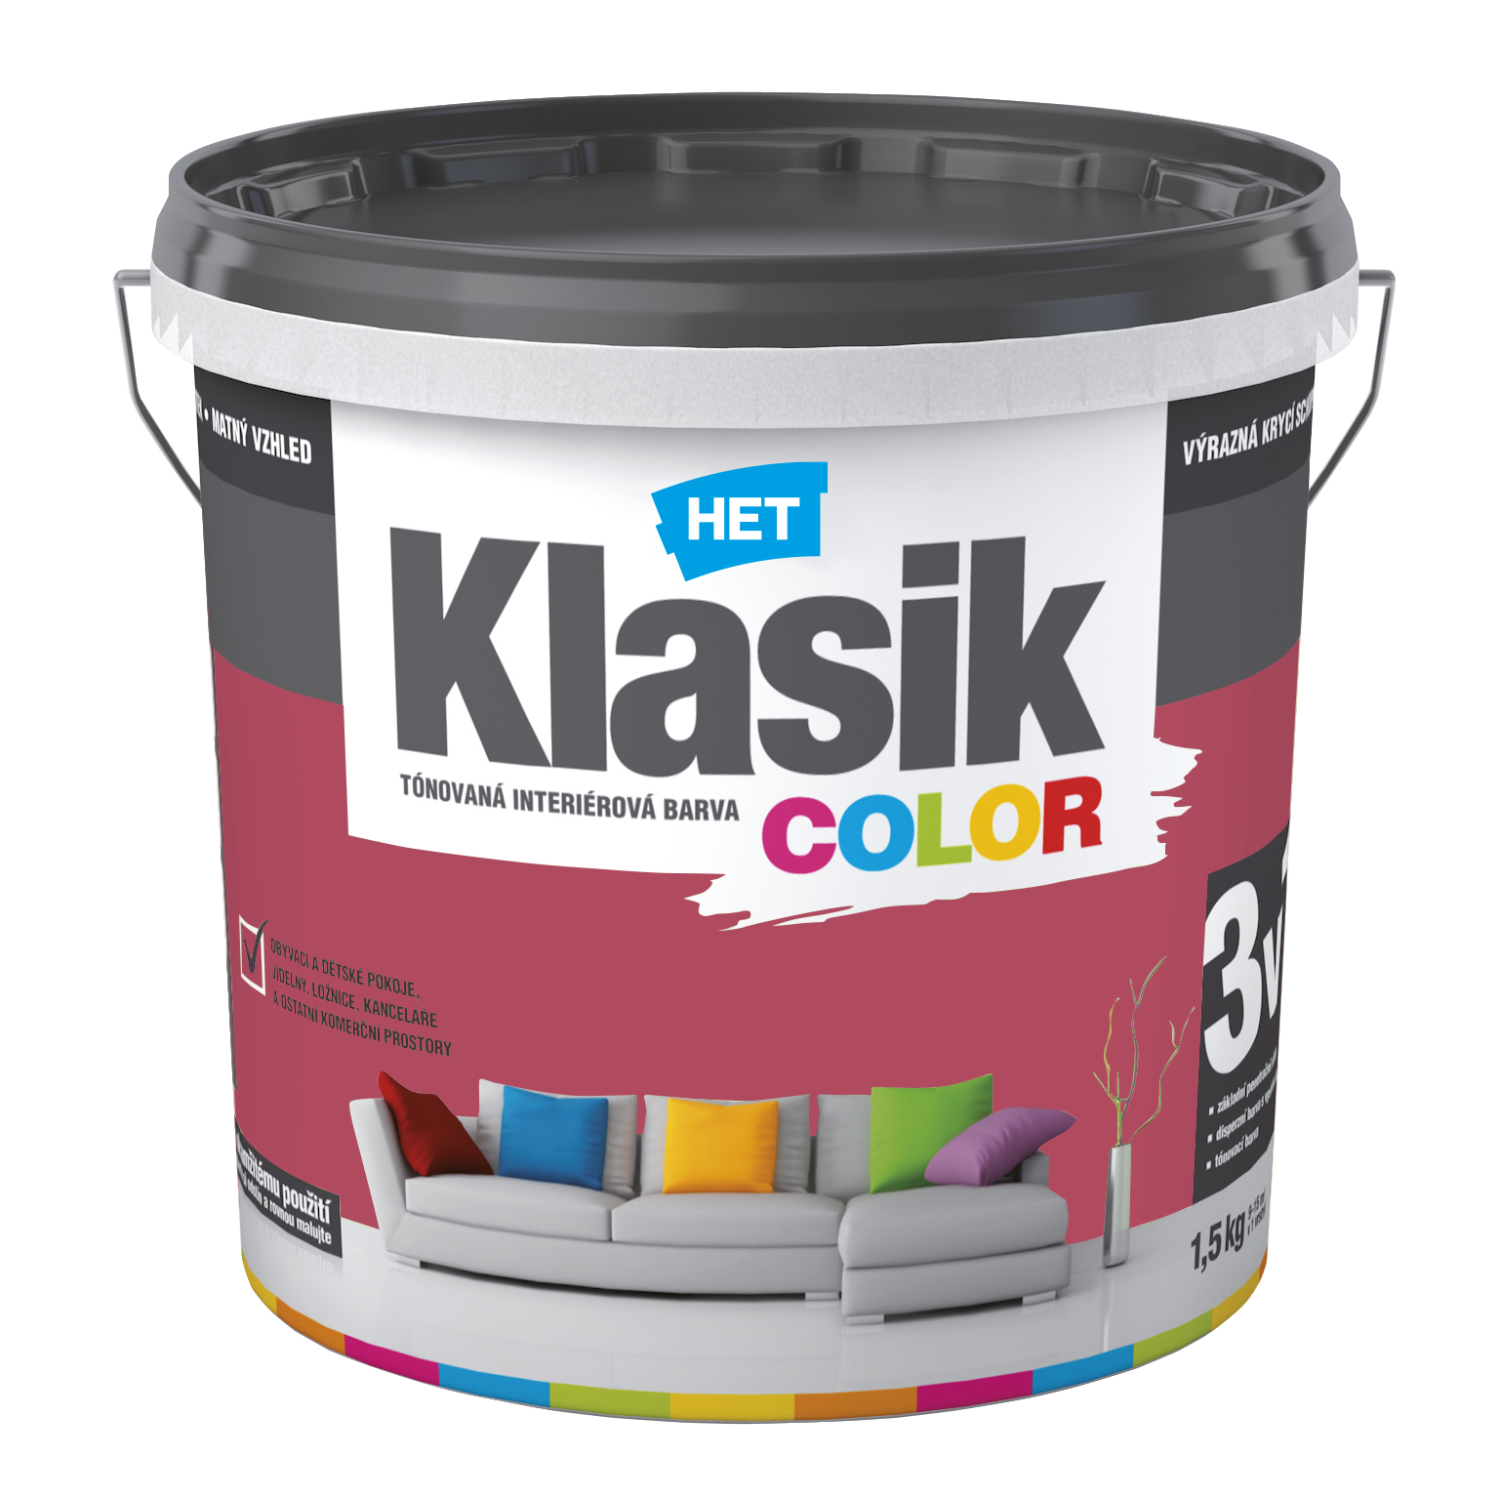 HET Klasik COLOR tónovaná interiérová akrylátová disperzná oteruvzdorná farba 1,5 kg, KC0837 - ružový